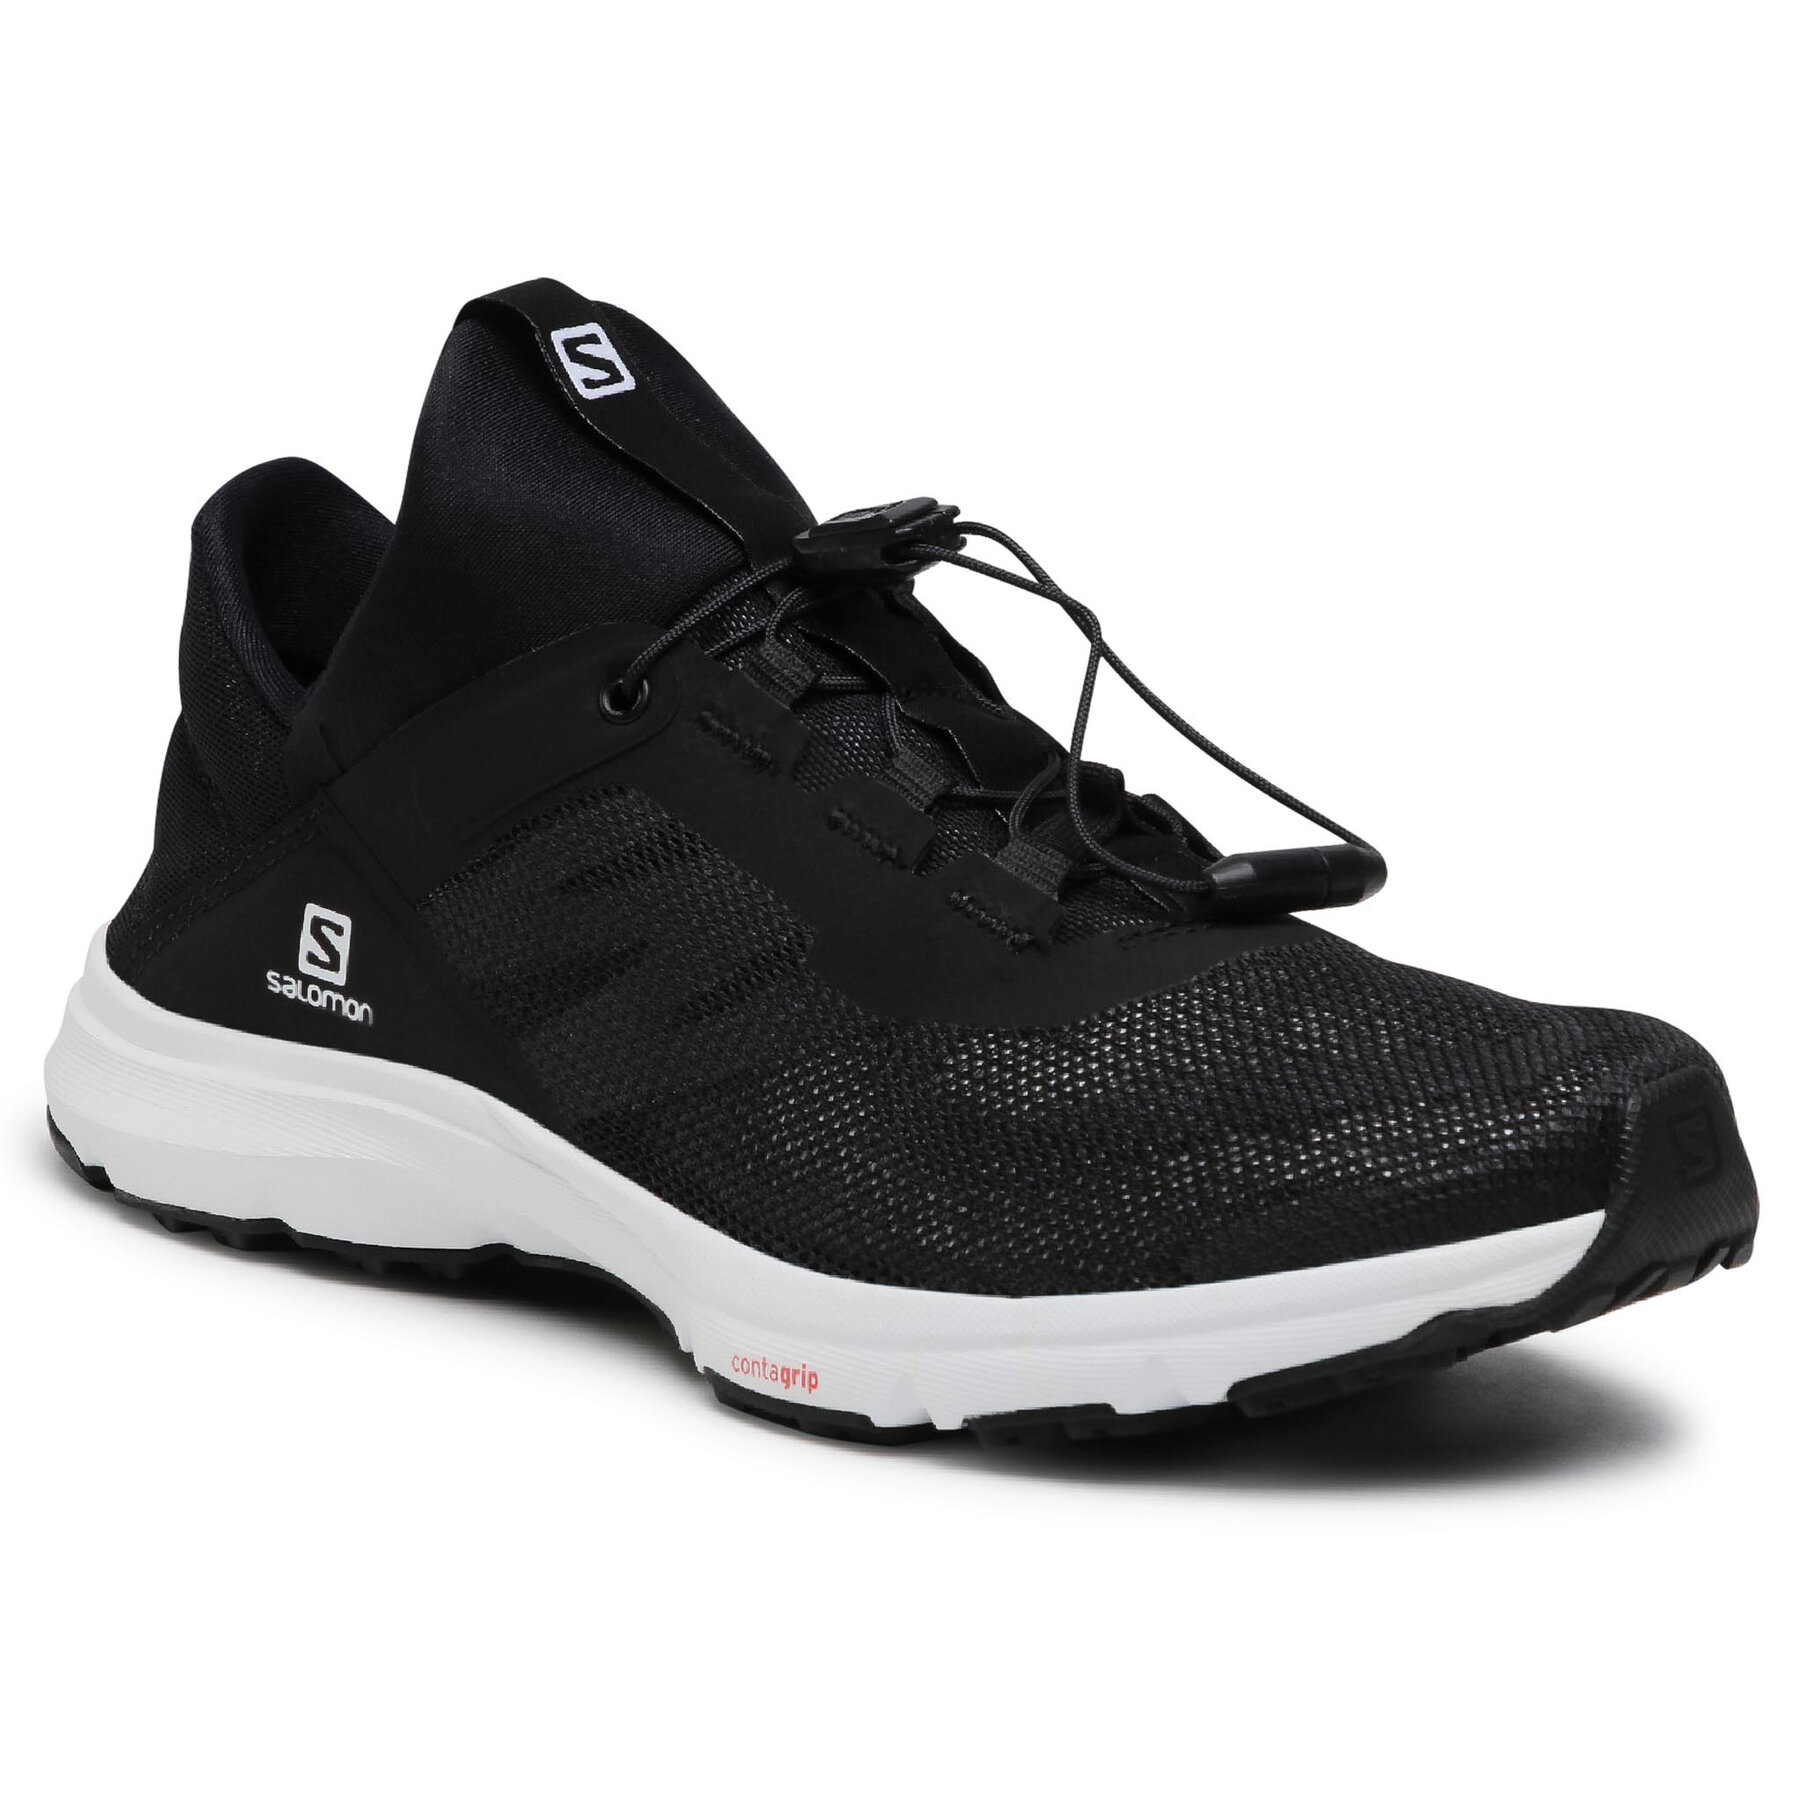 Pantofi Salomon Amphib Bold 2 413042 21 V0 Black/White/Black epantofi.ro imagine noua